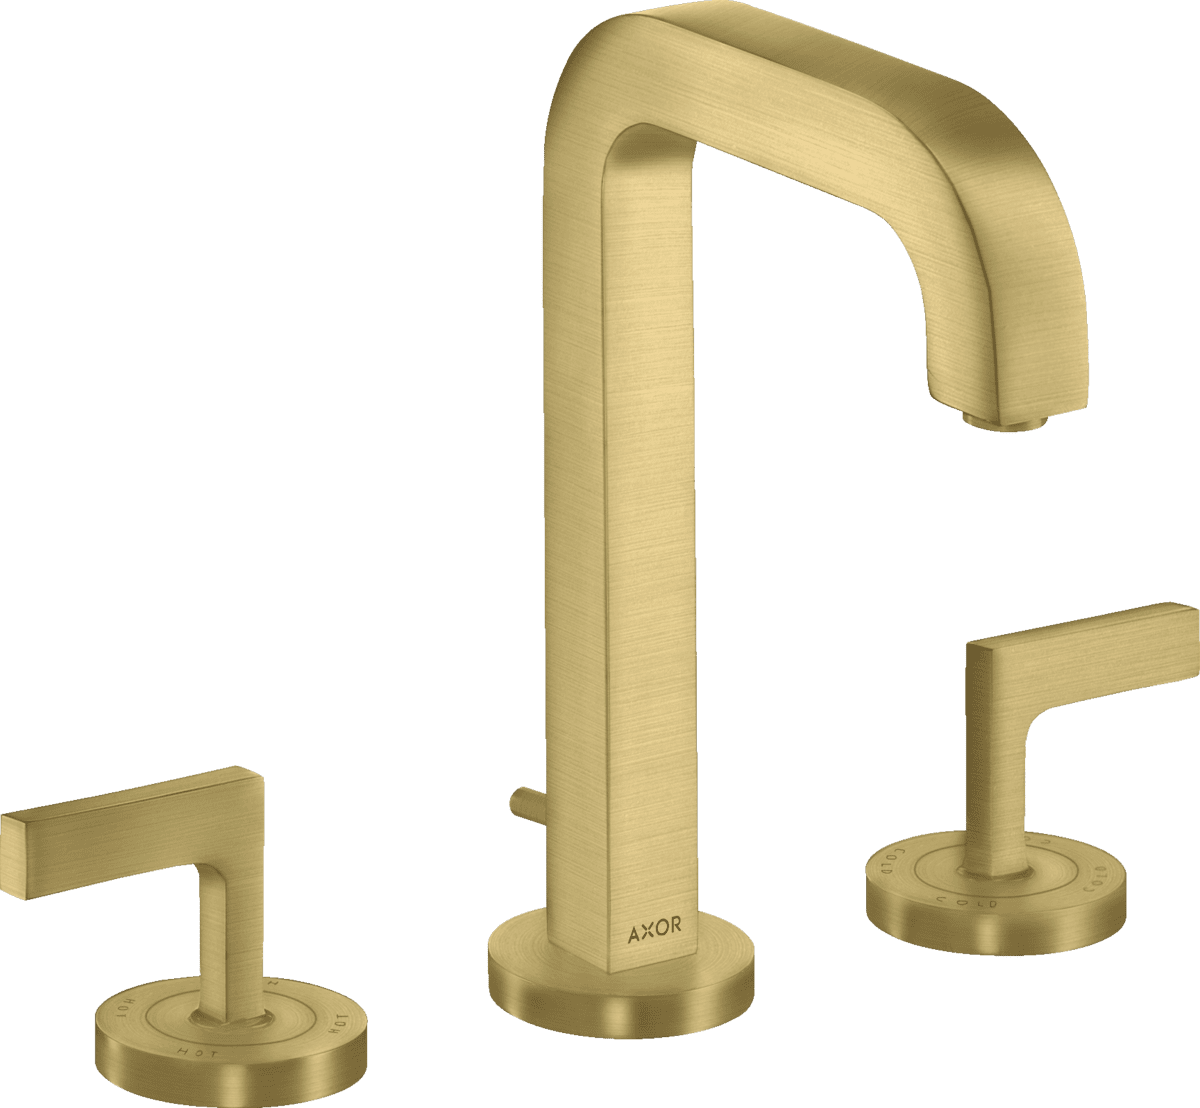 Bild von HANSGROHE AXOR Citterio 3-Loch Waschtischarmatur 170 mit Auslauf 140 mm, Hebelgriffen, Rosetten und Zugstangen-Ablaufgarnitur #39135950 - Brushed Brass